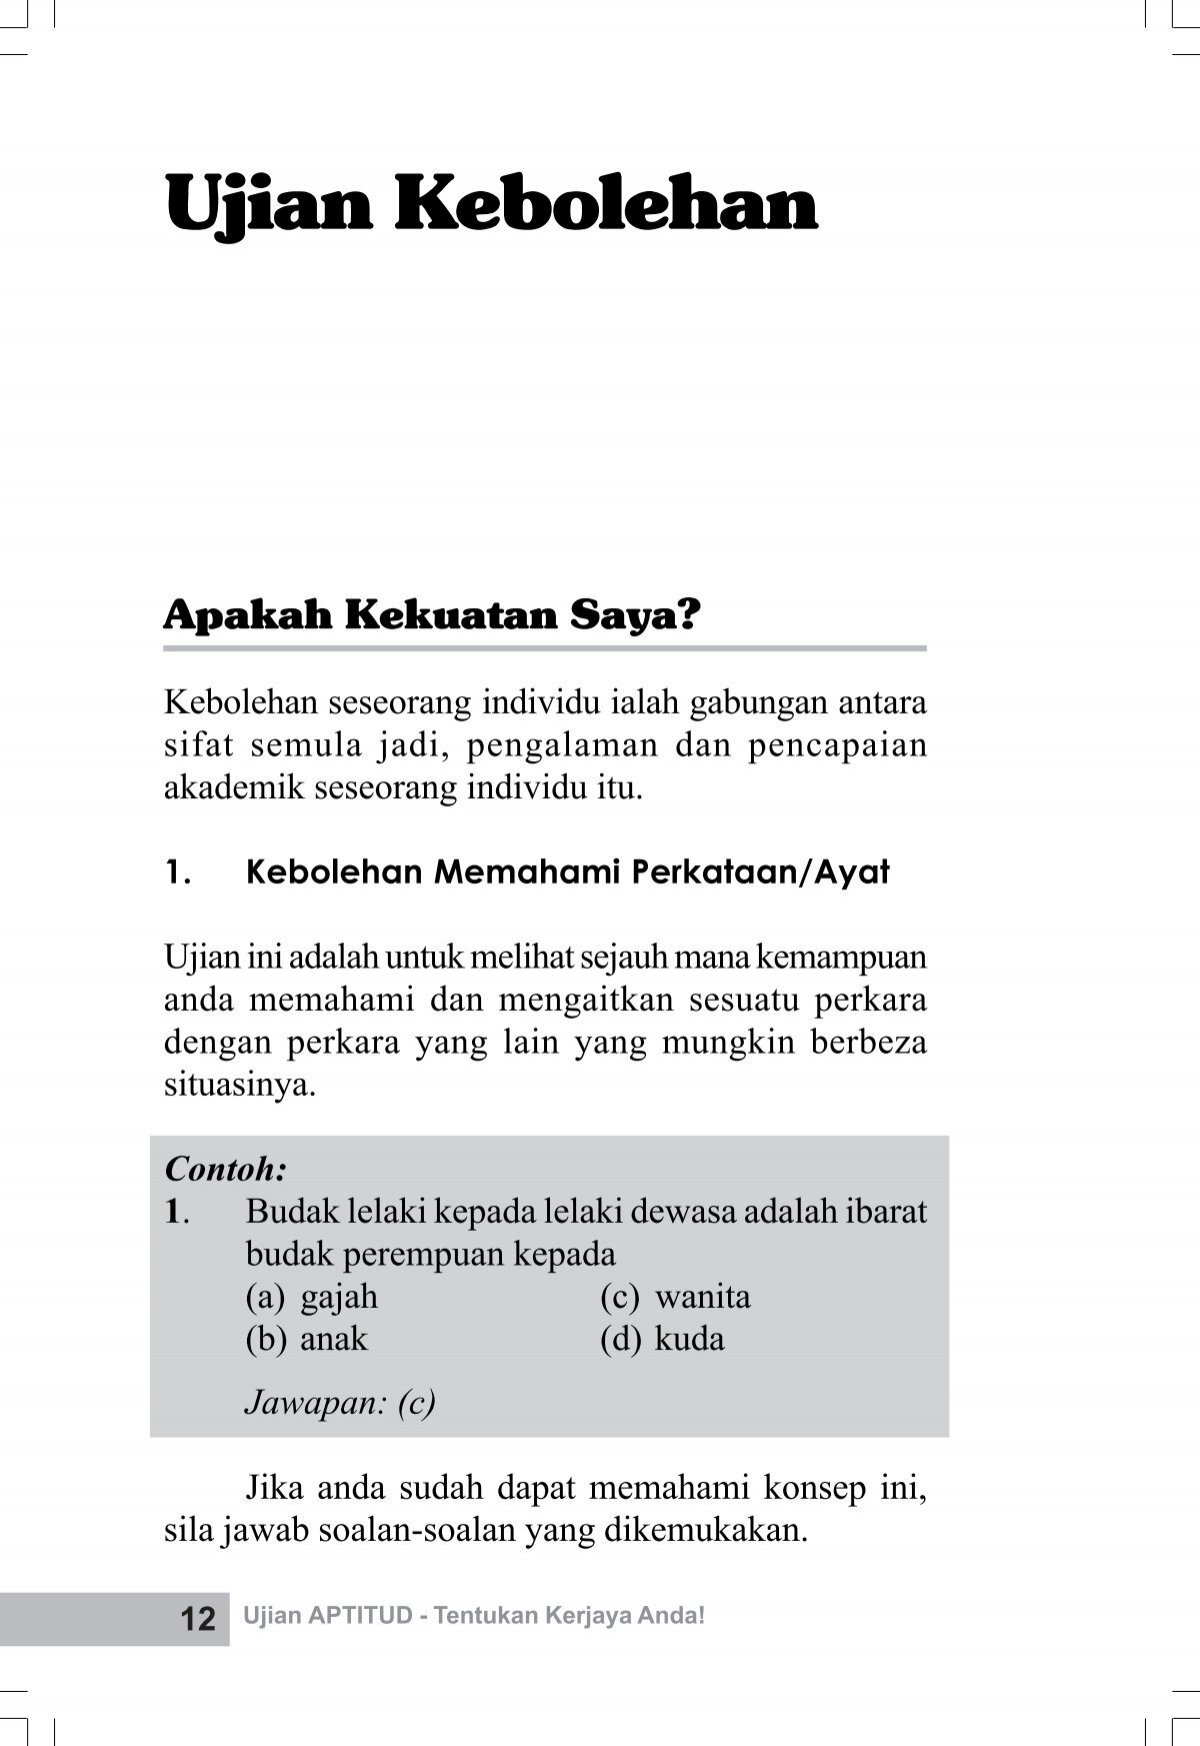 Ujian Kebolehan.pdf